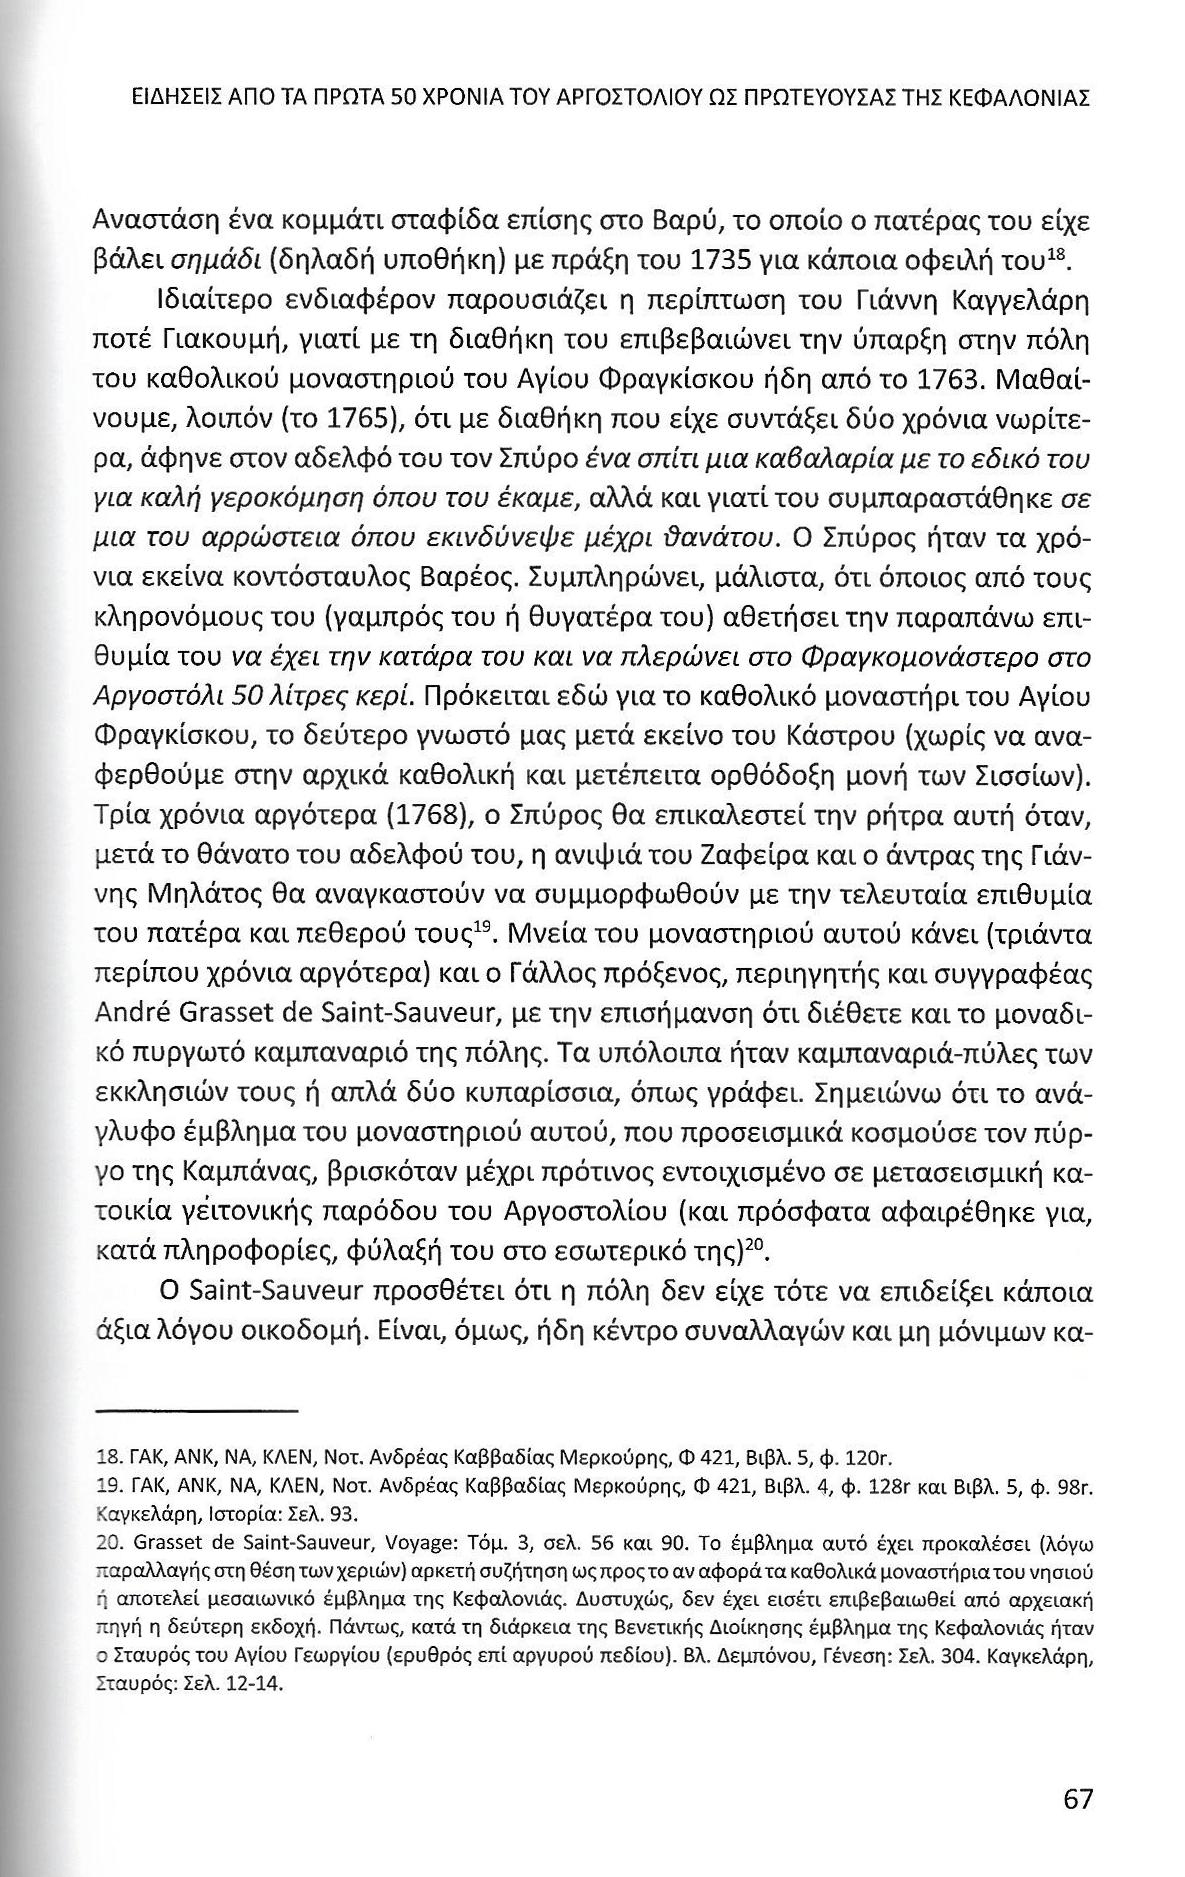 Πρώτα 50 χρόνια Αργοστολίου ως πρωτεύουσας Κεφαλονιάς, Ιονικά Ανάλεκτα, τ. 7, σελ. 67